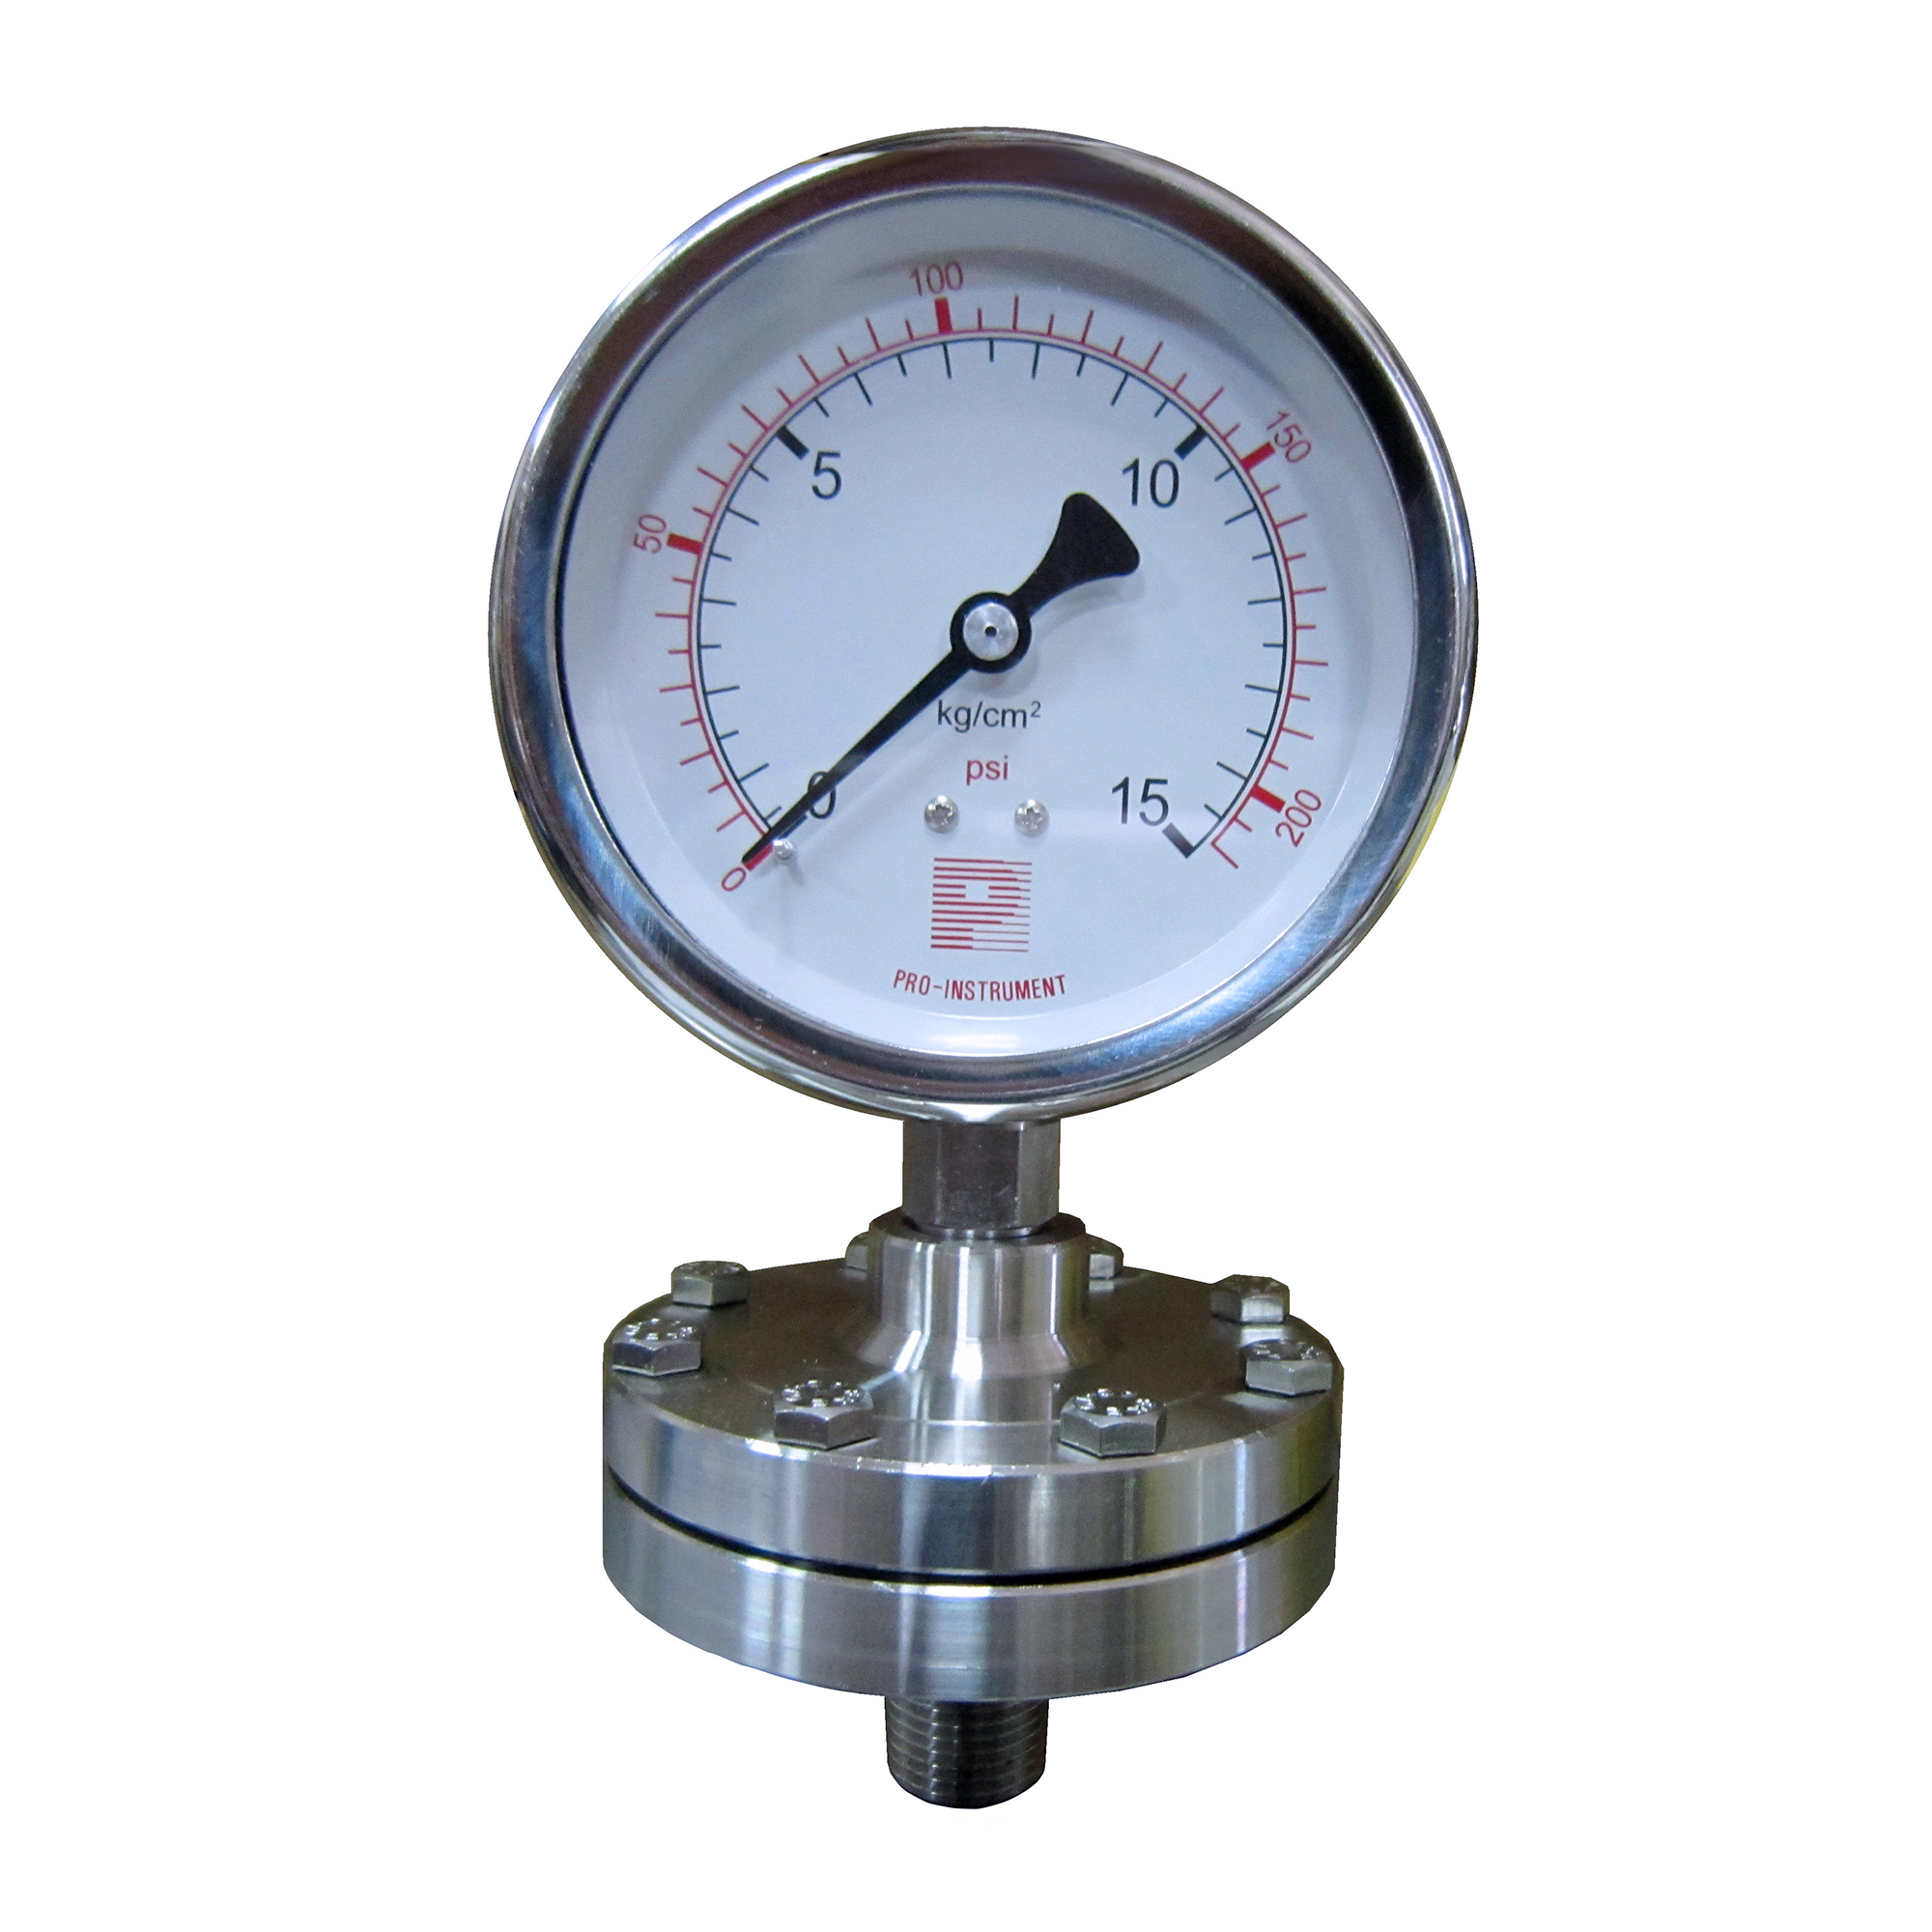 다이어프램 타입 압력계 (나사 식), P700